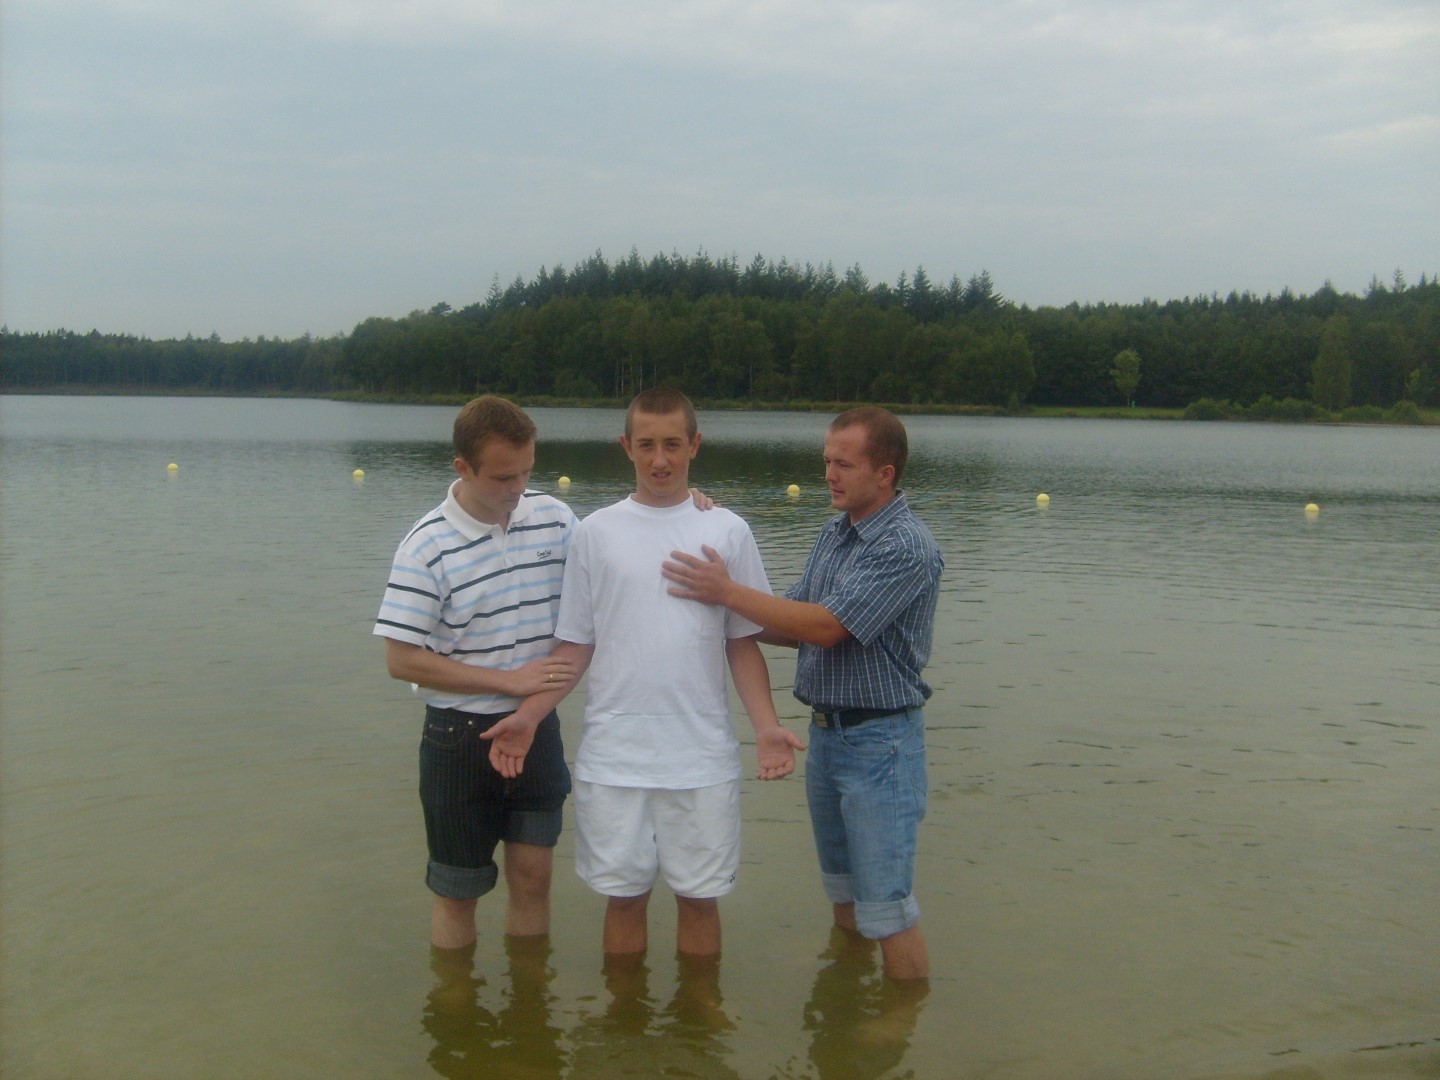 keresztelés doop nederland heerder strand